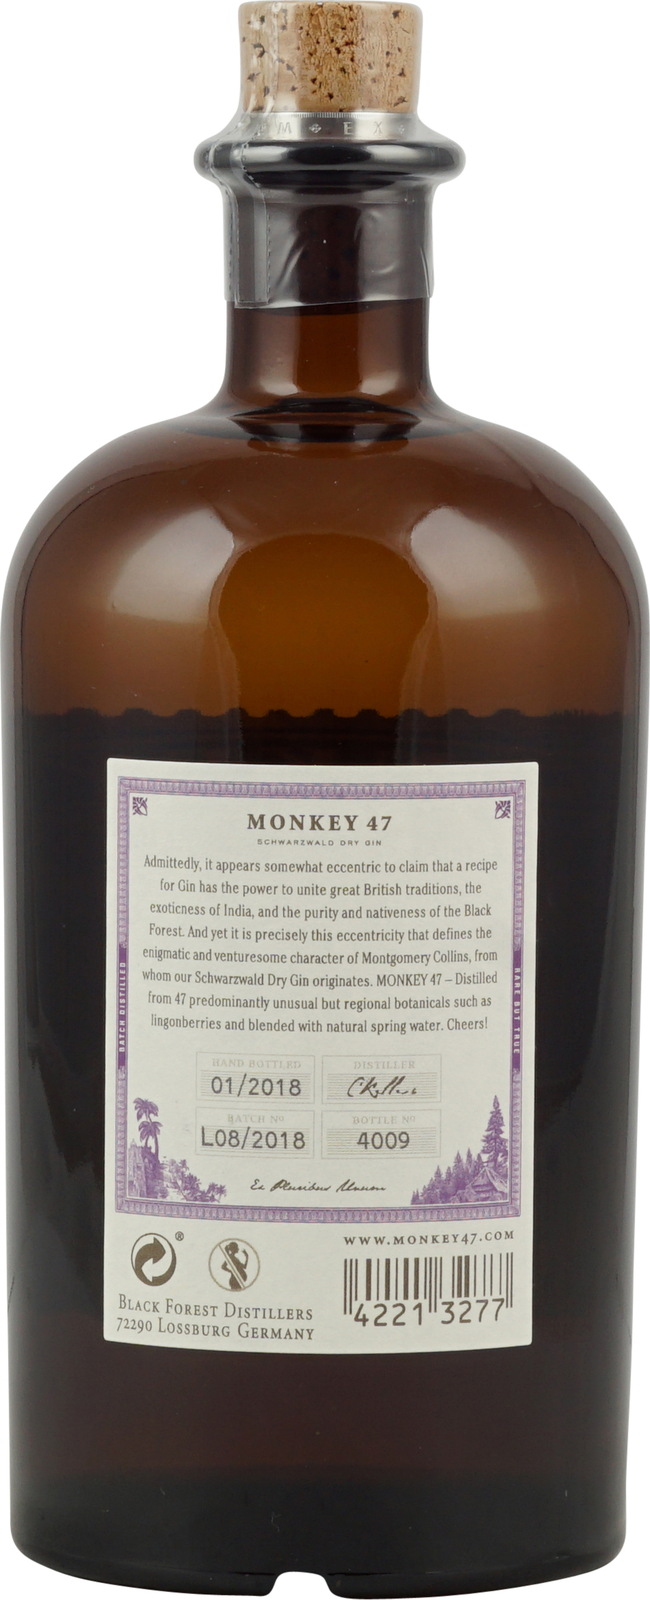 Monkey 47 Schwarzwald Dry Gin 0,5 Liter + Monkey 47 The Becher kaufen.